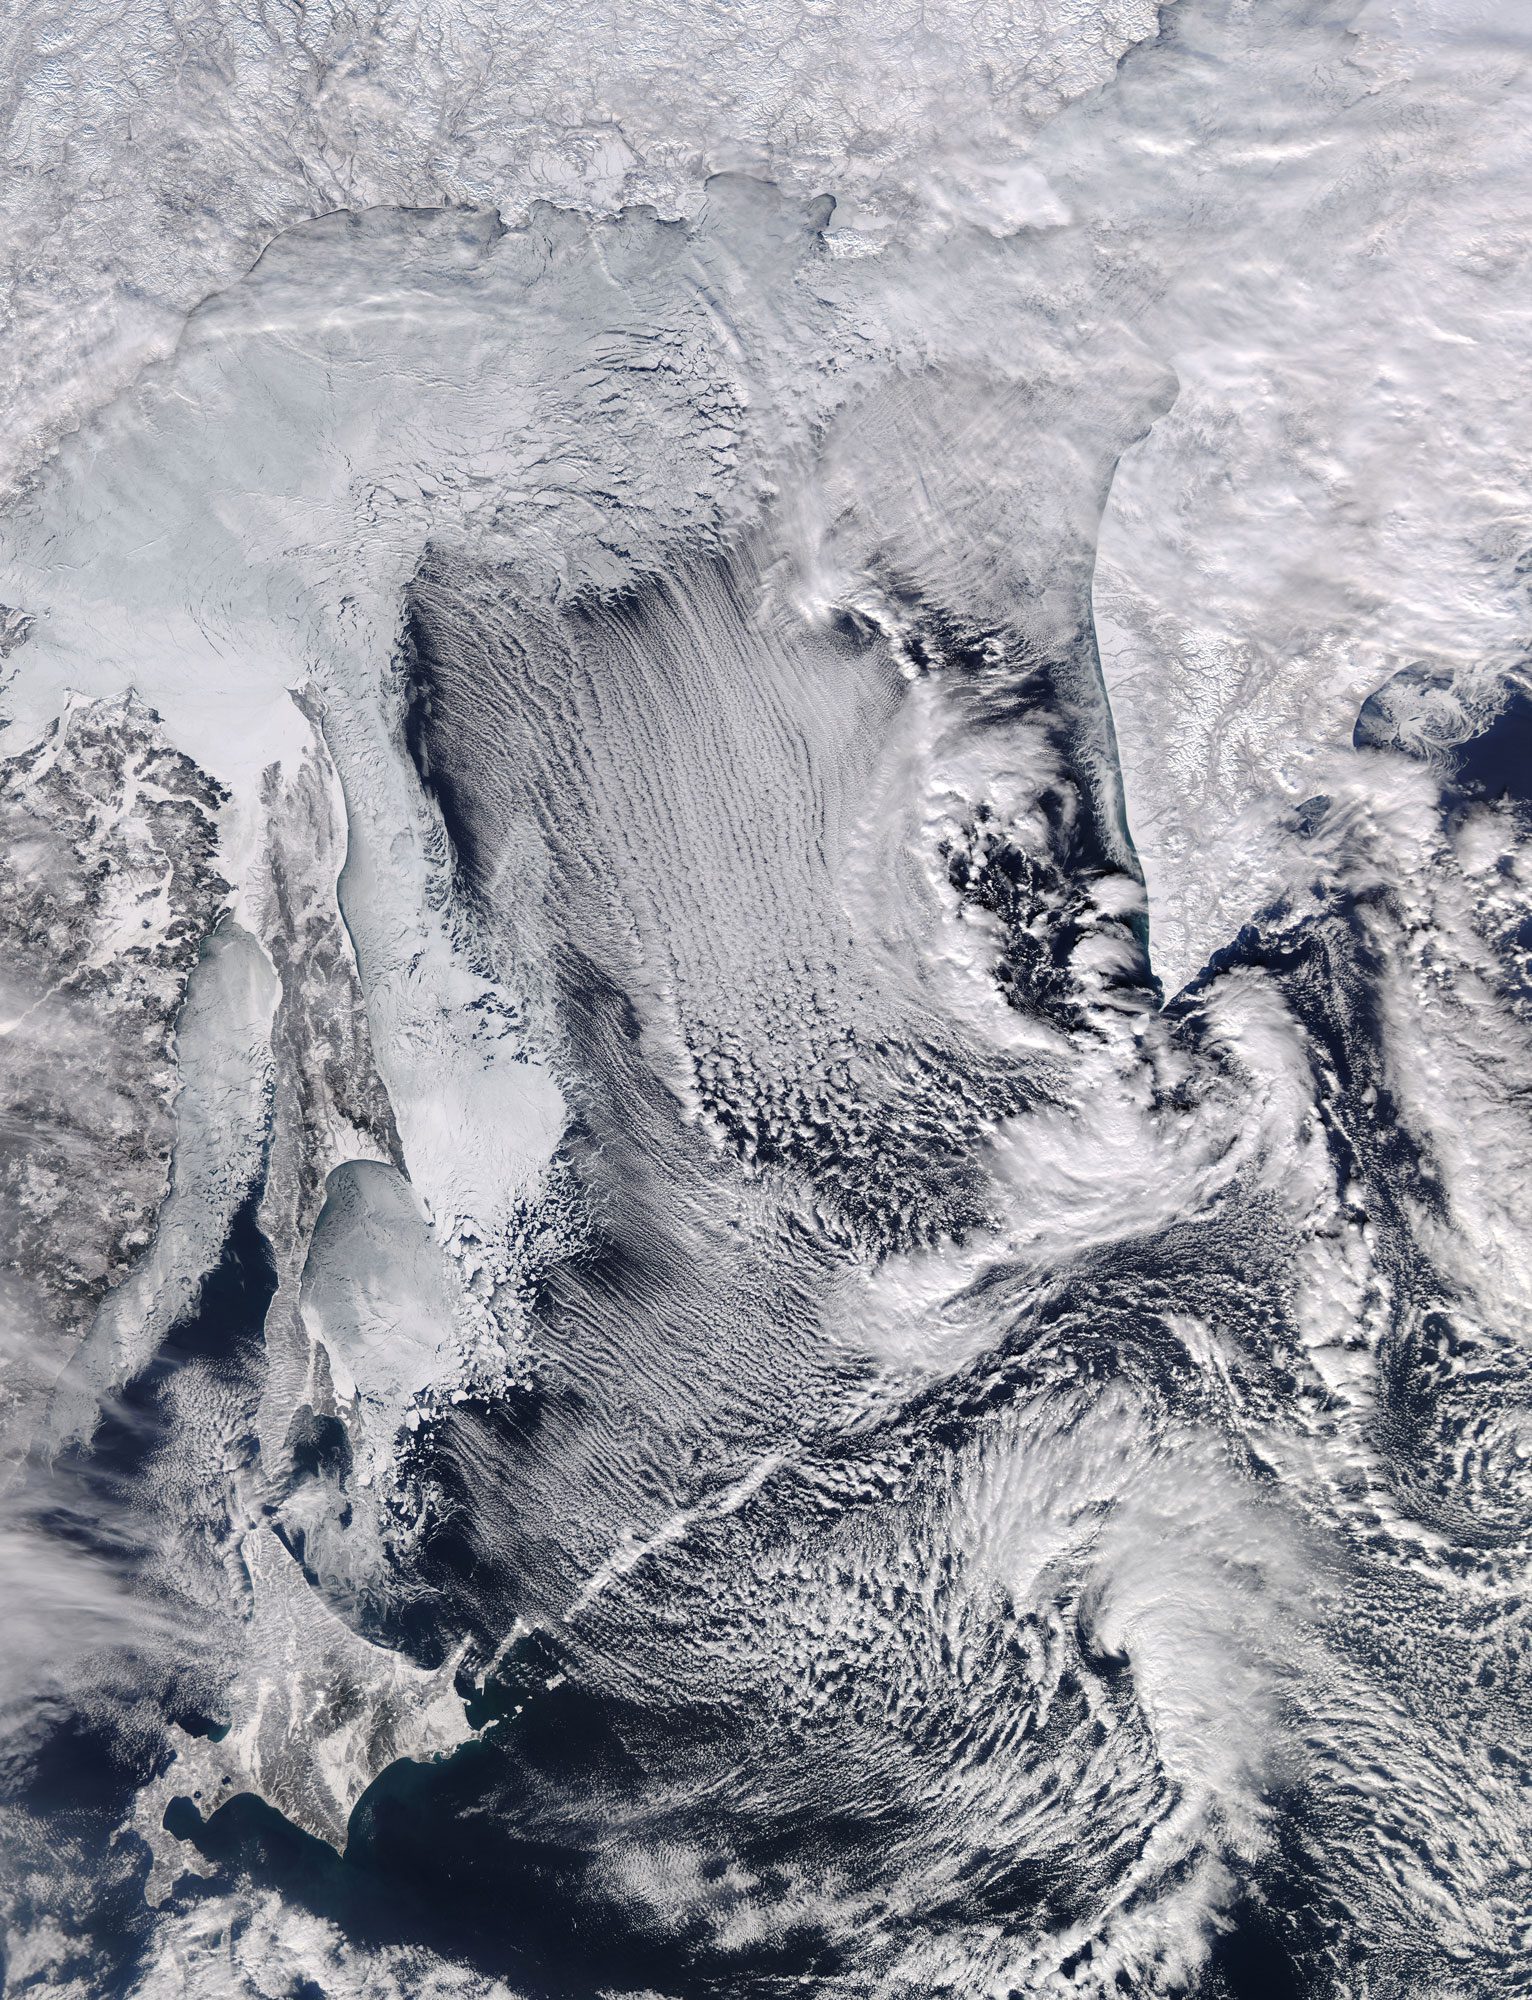 Winter Exposes Sea of Okhotsk's Beauty, Danger